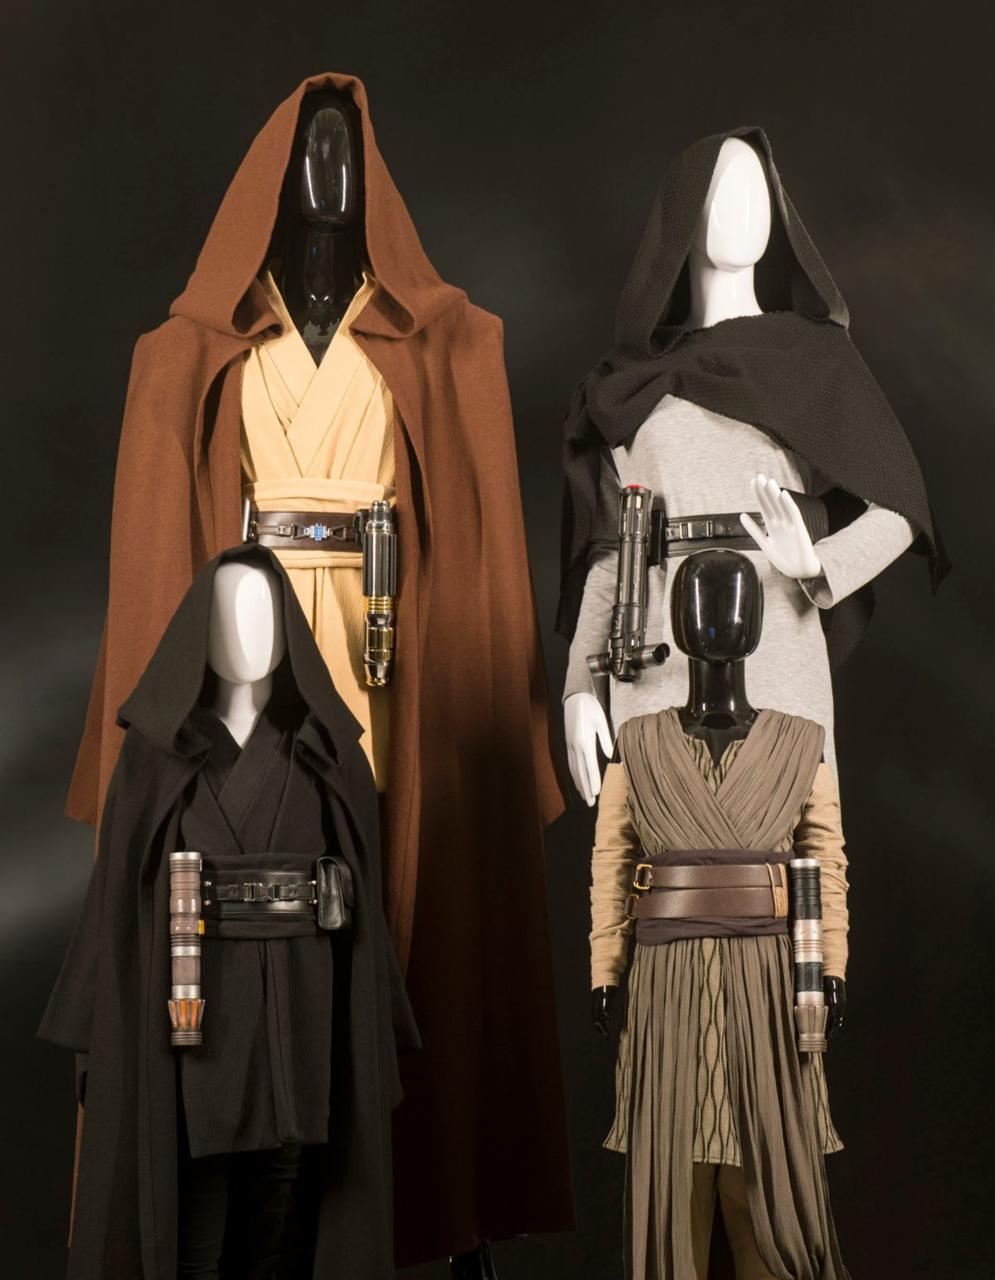 21. Jedi cosplay items